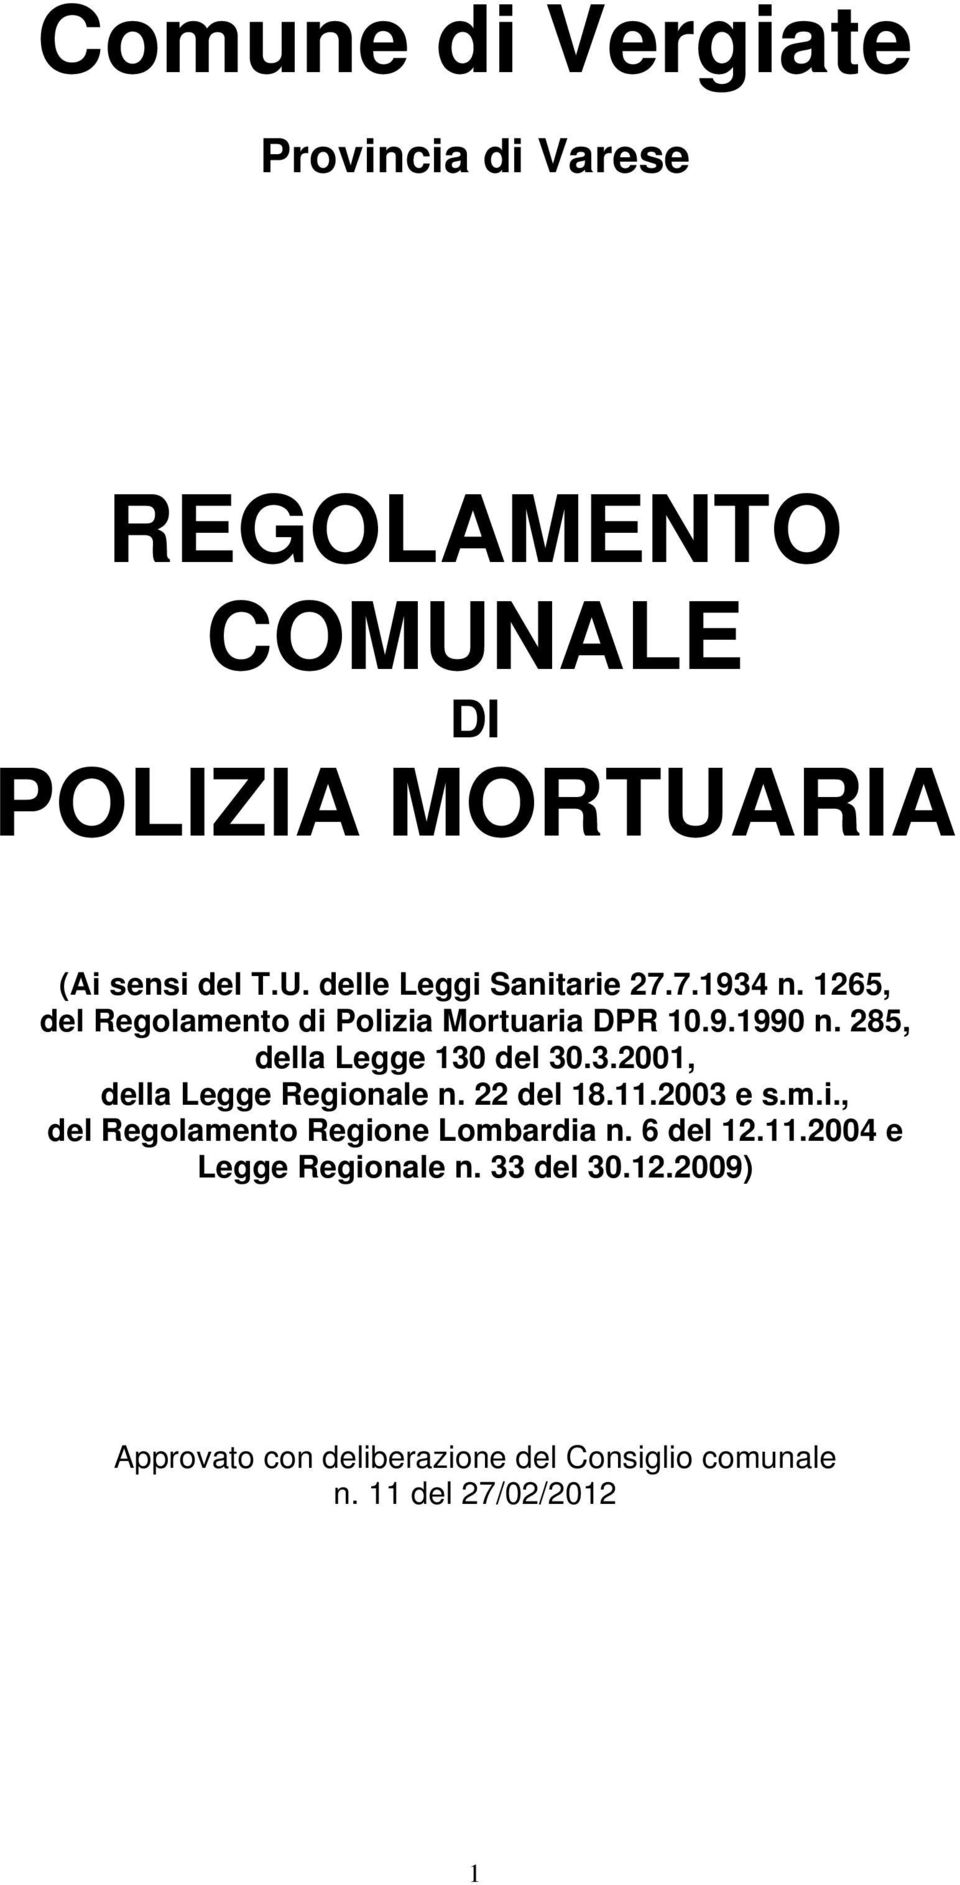 22 del 18.11.2003 e s.m.i., del Regolamento Regione Lombardia n. 6 del 12.11.2004 e Legge Regionale n. 33 del 30.